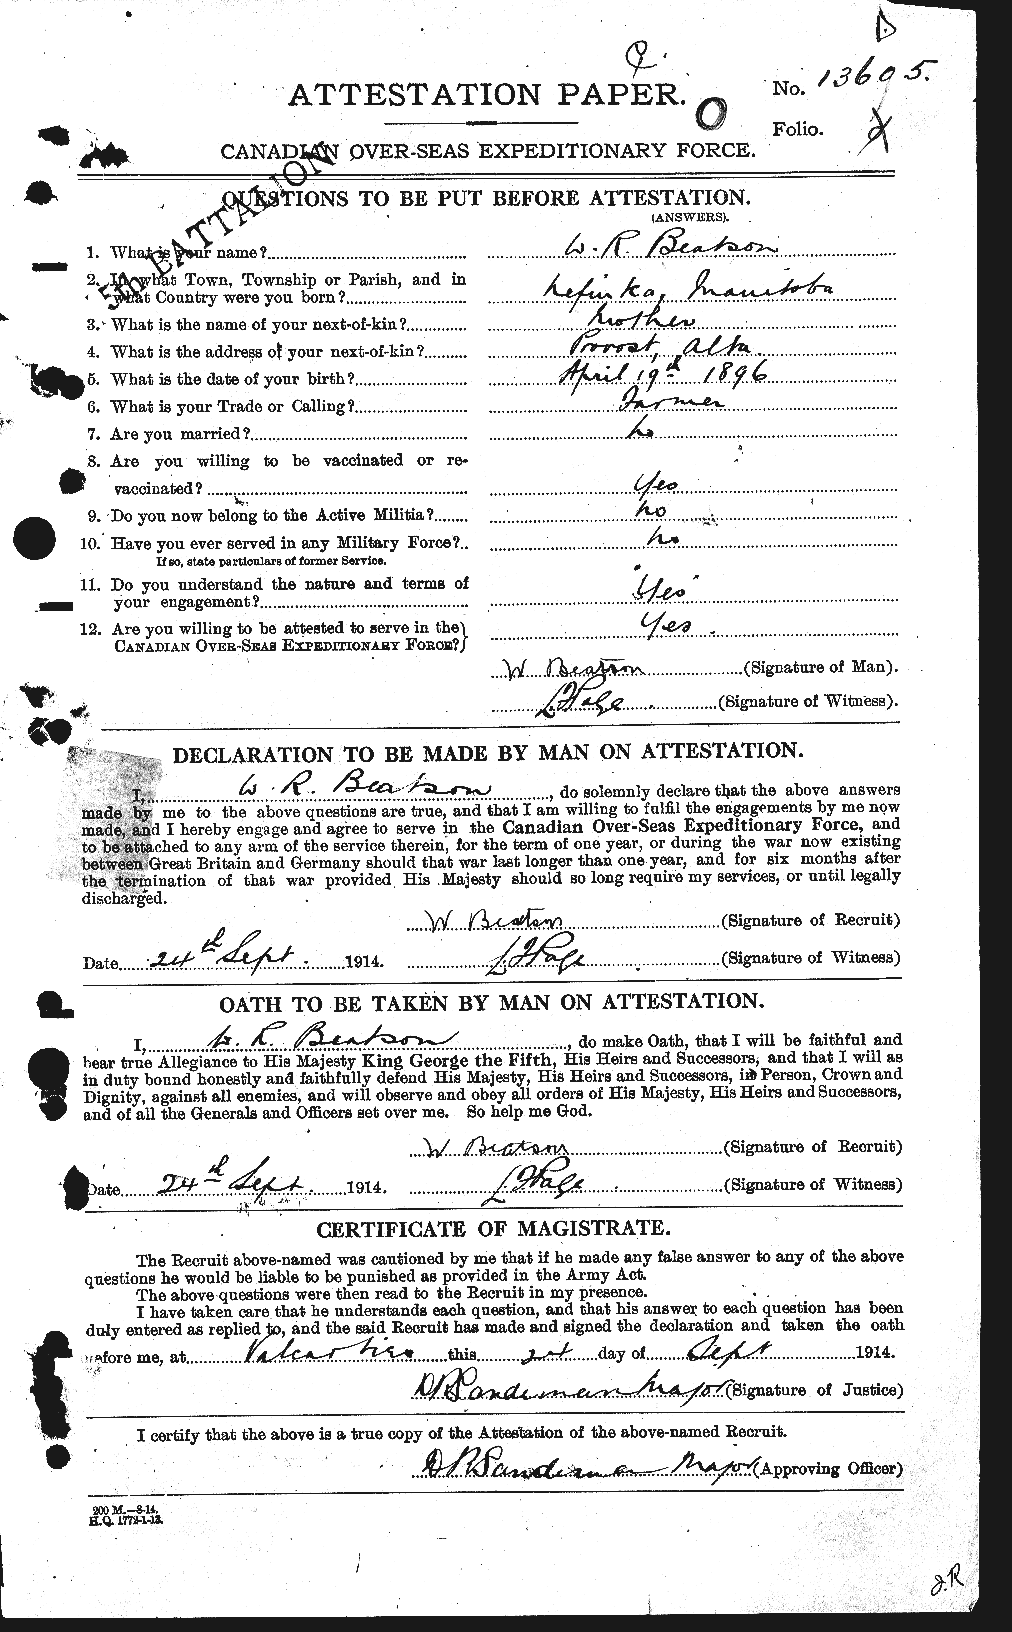 Dossiers du Personnel de la Première Guerre mondiale - CEC 230619a